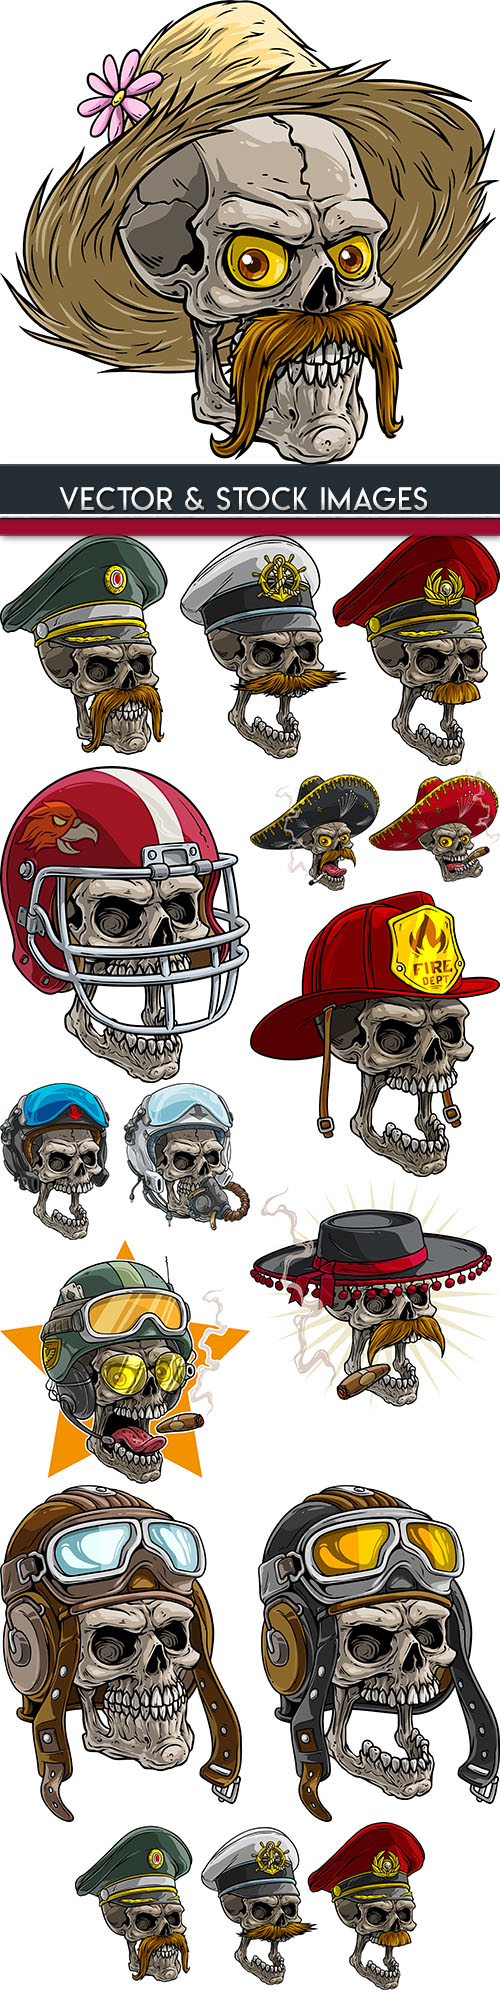 Skull grunge cartoon tattoo Halloween illustration